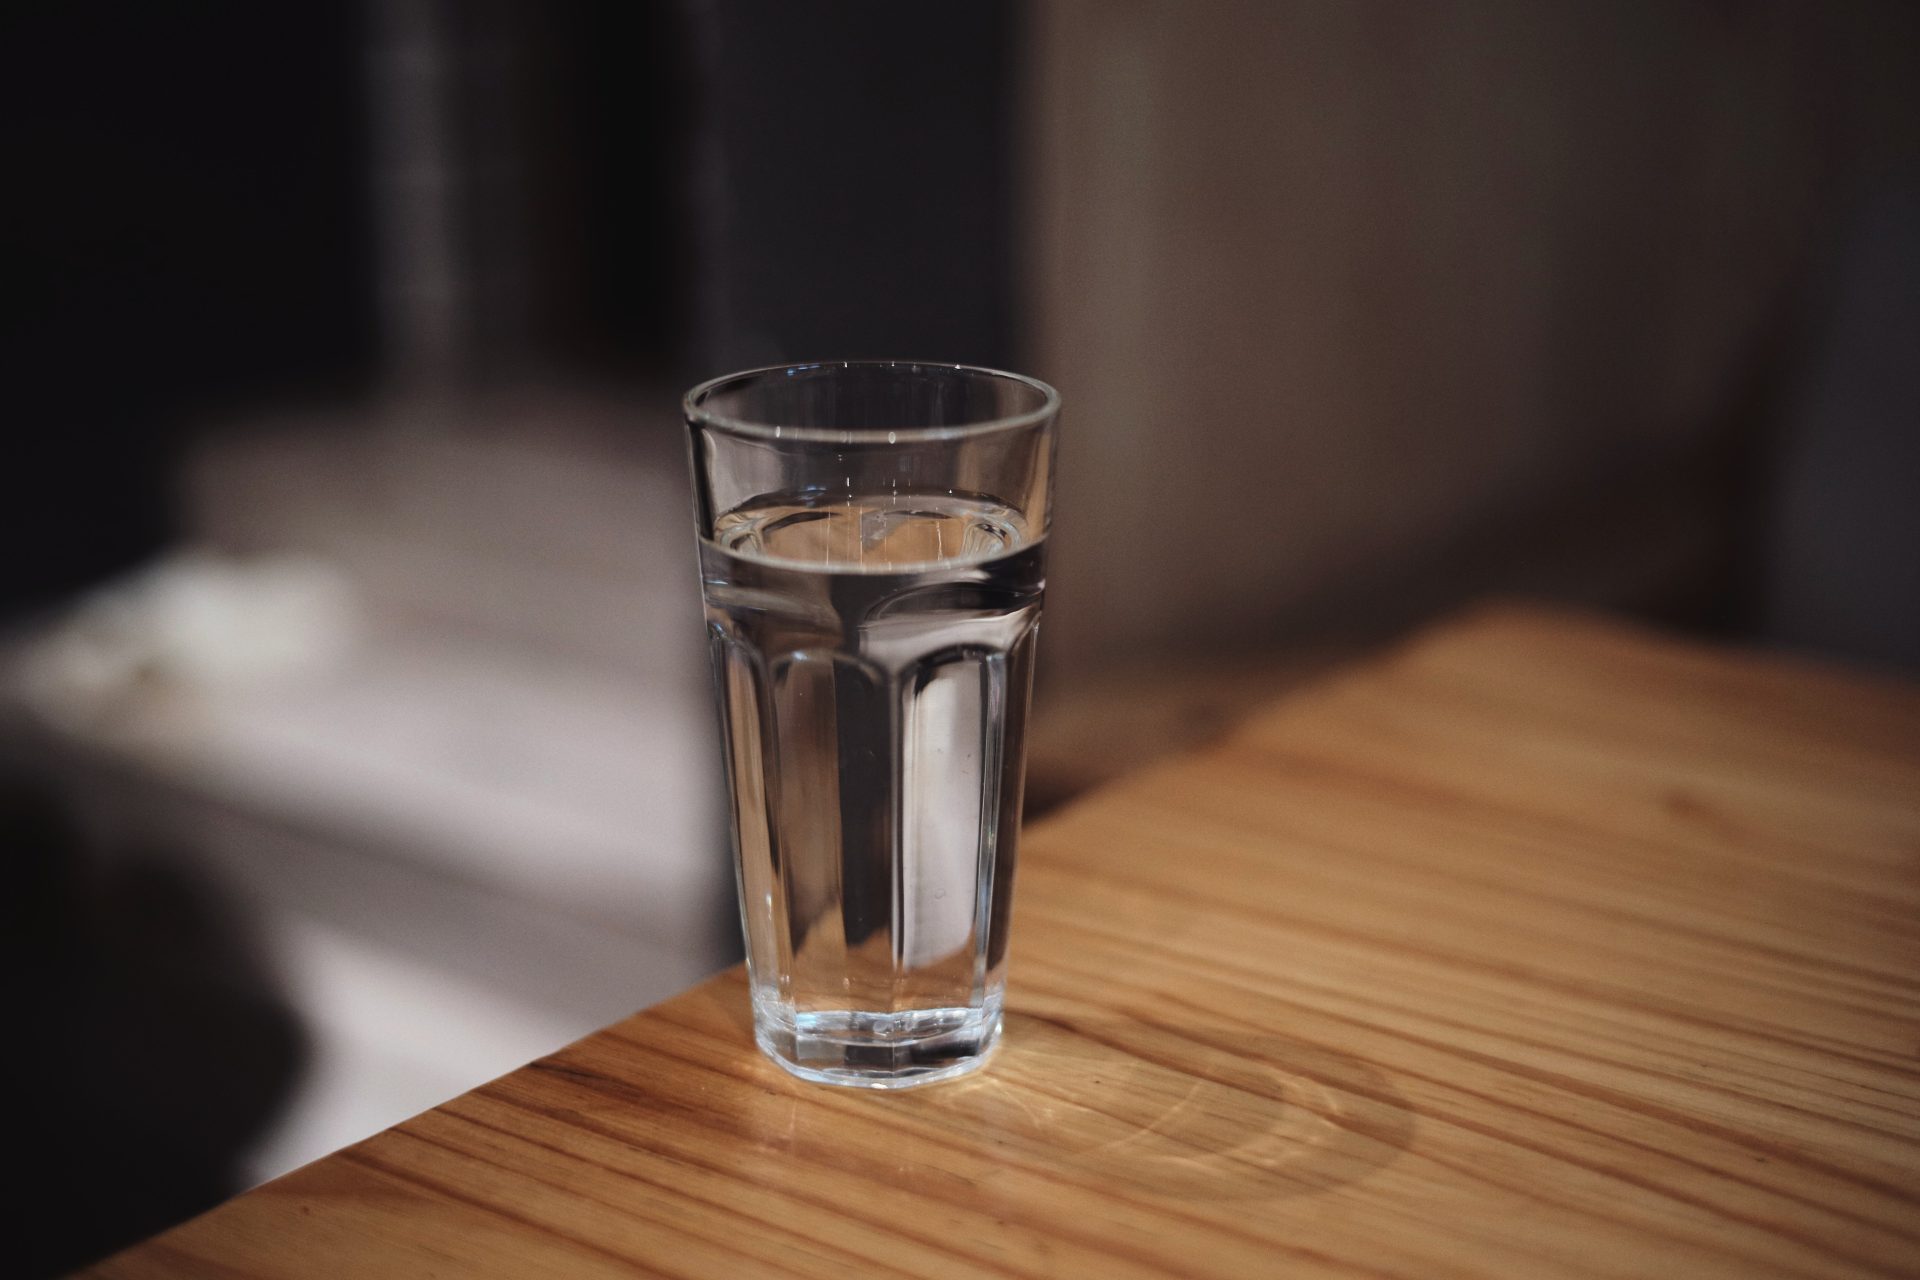 Brzi test: Uštinite prst i za sekund otkrijte da li vam hitno treba čaša vode